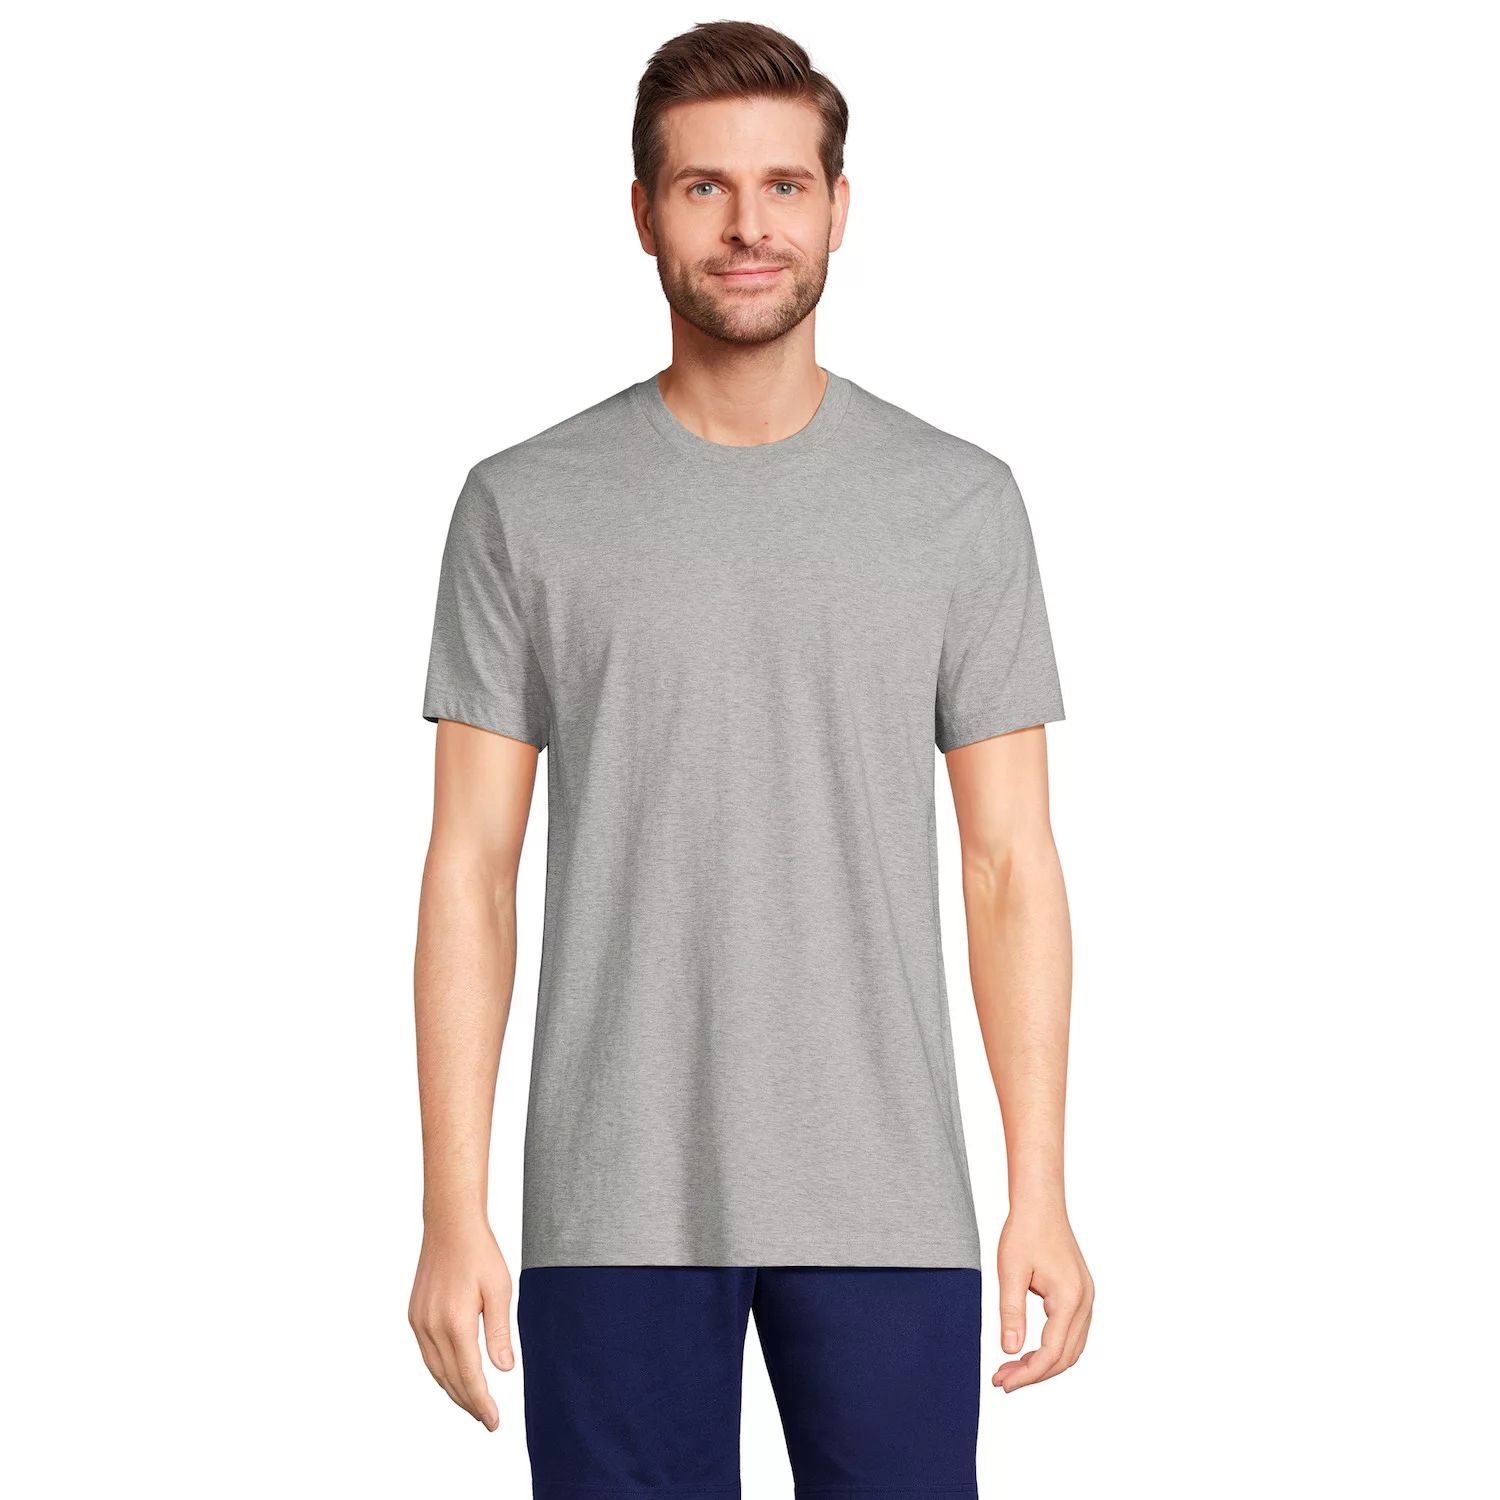 Комплект из трех футболок-майок Big & Tall с круглым вырезом Lands' End цена и фото